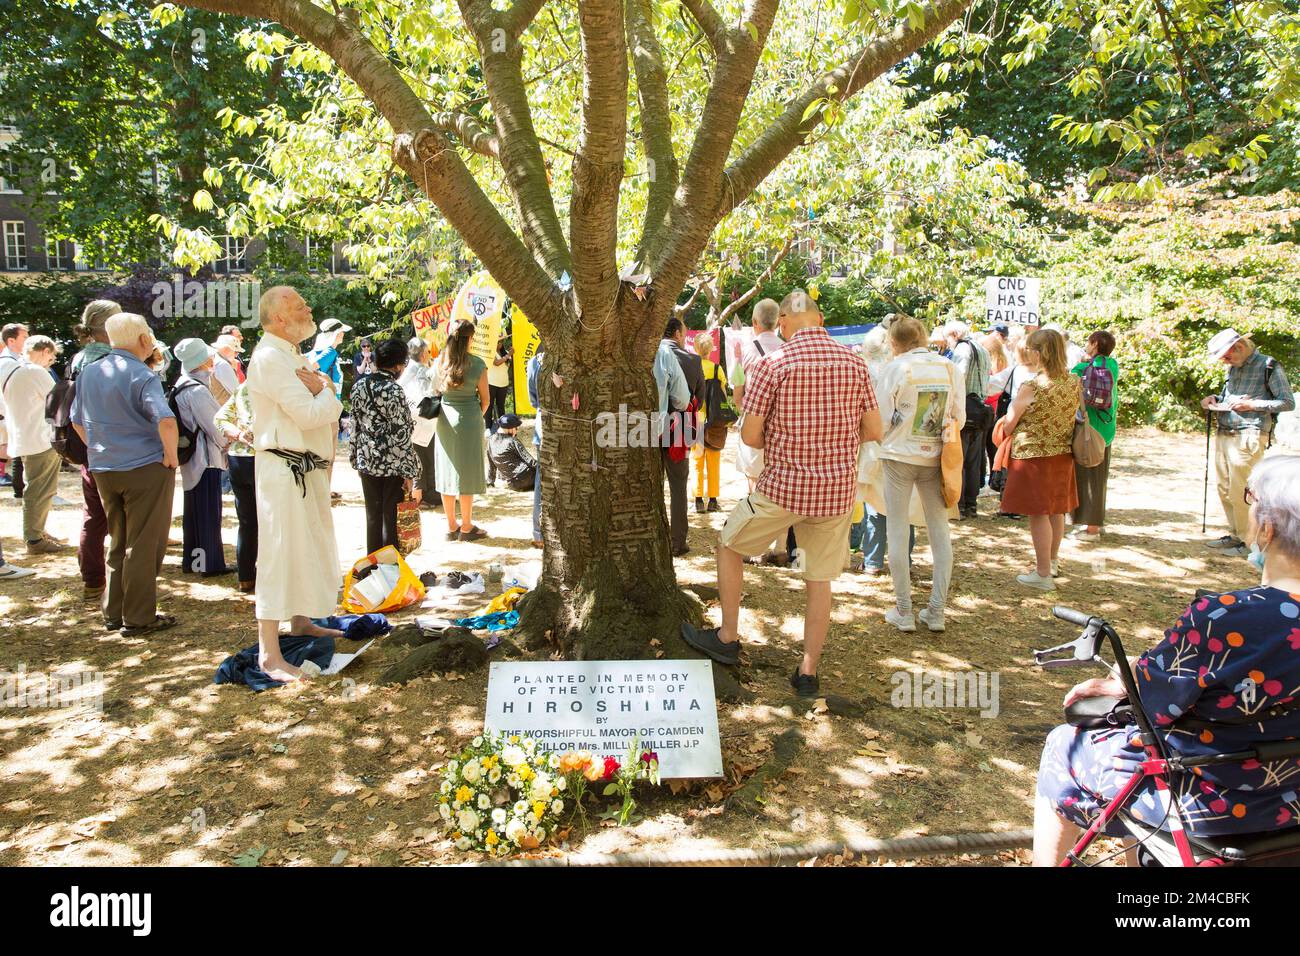 Les gens se rassemblent près du cerisier planté à la mémoire des victimes d'Hiroshima lors d'un événement de commémoration dans le centre de Londres. Banque D'Images